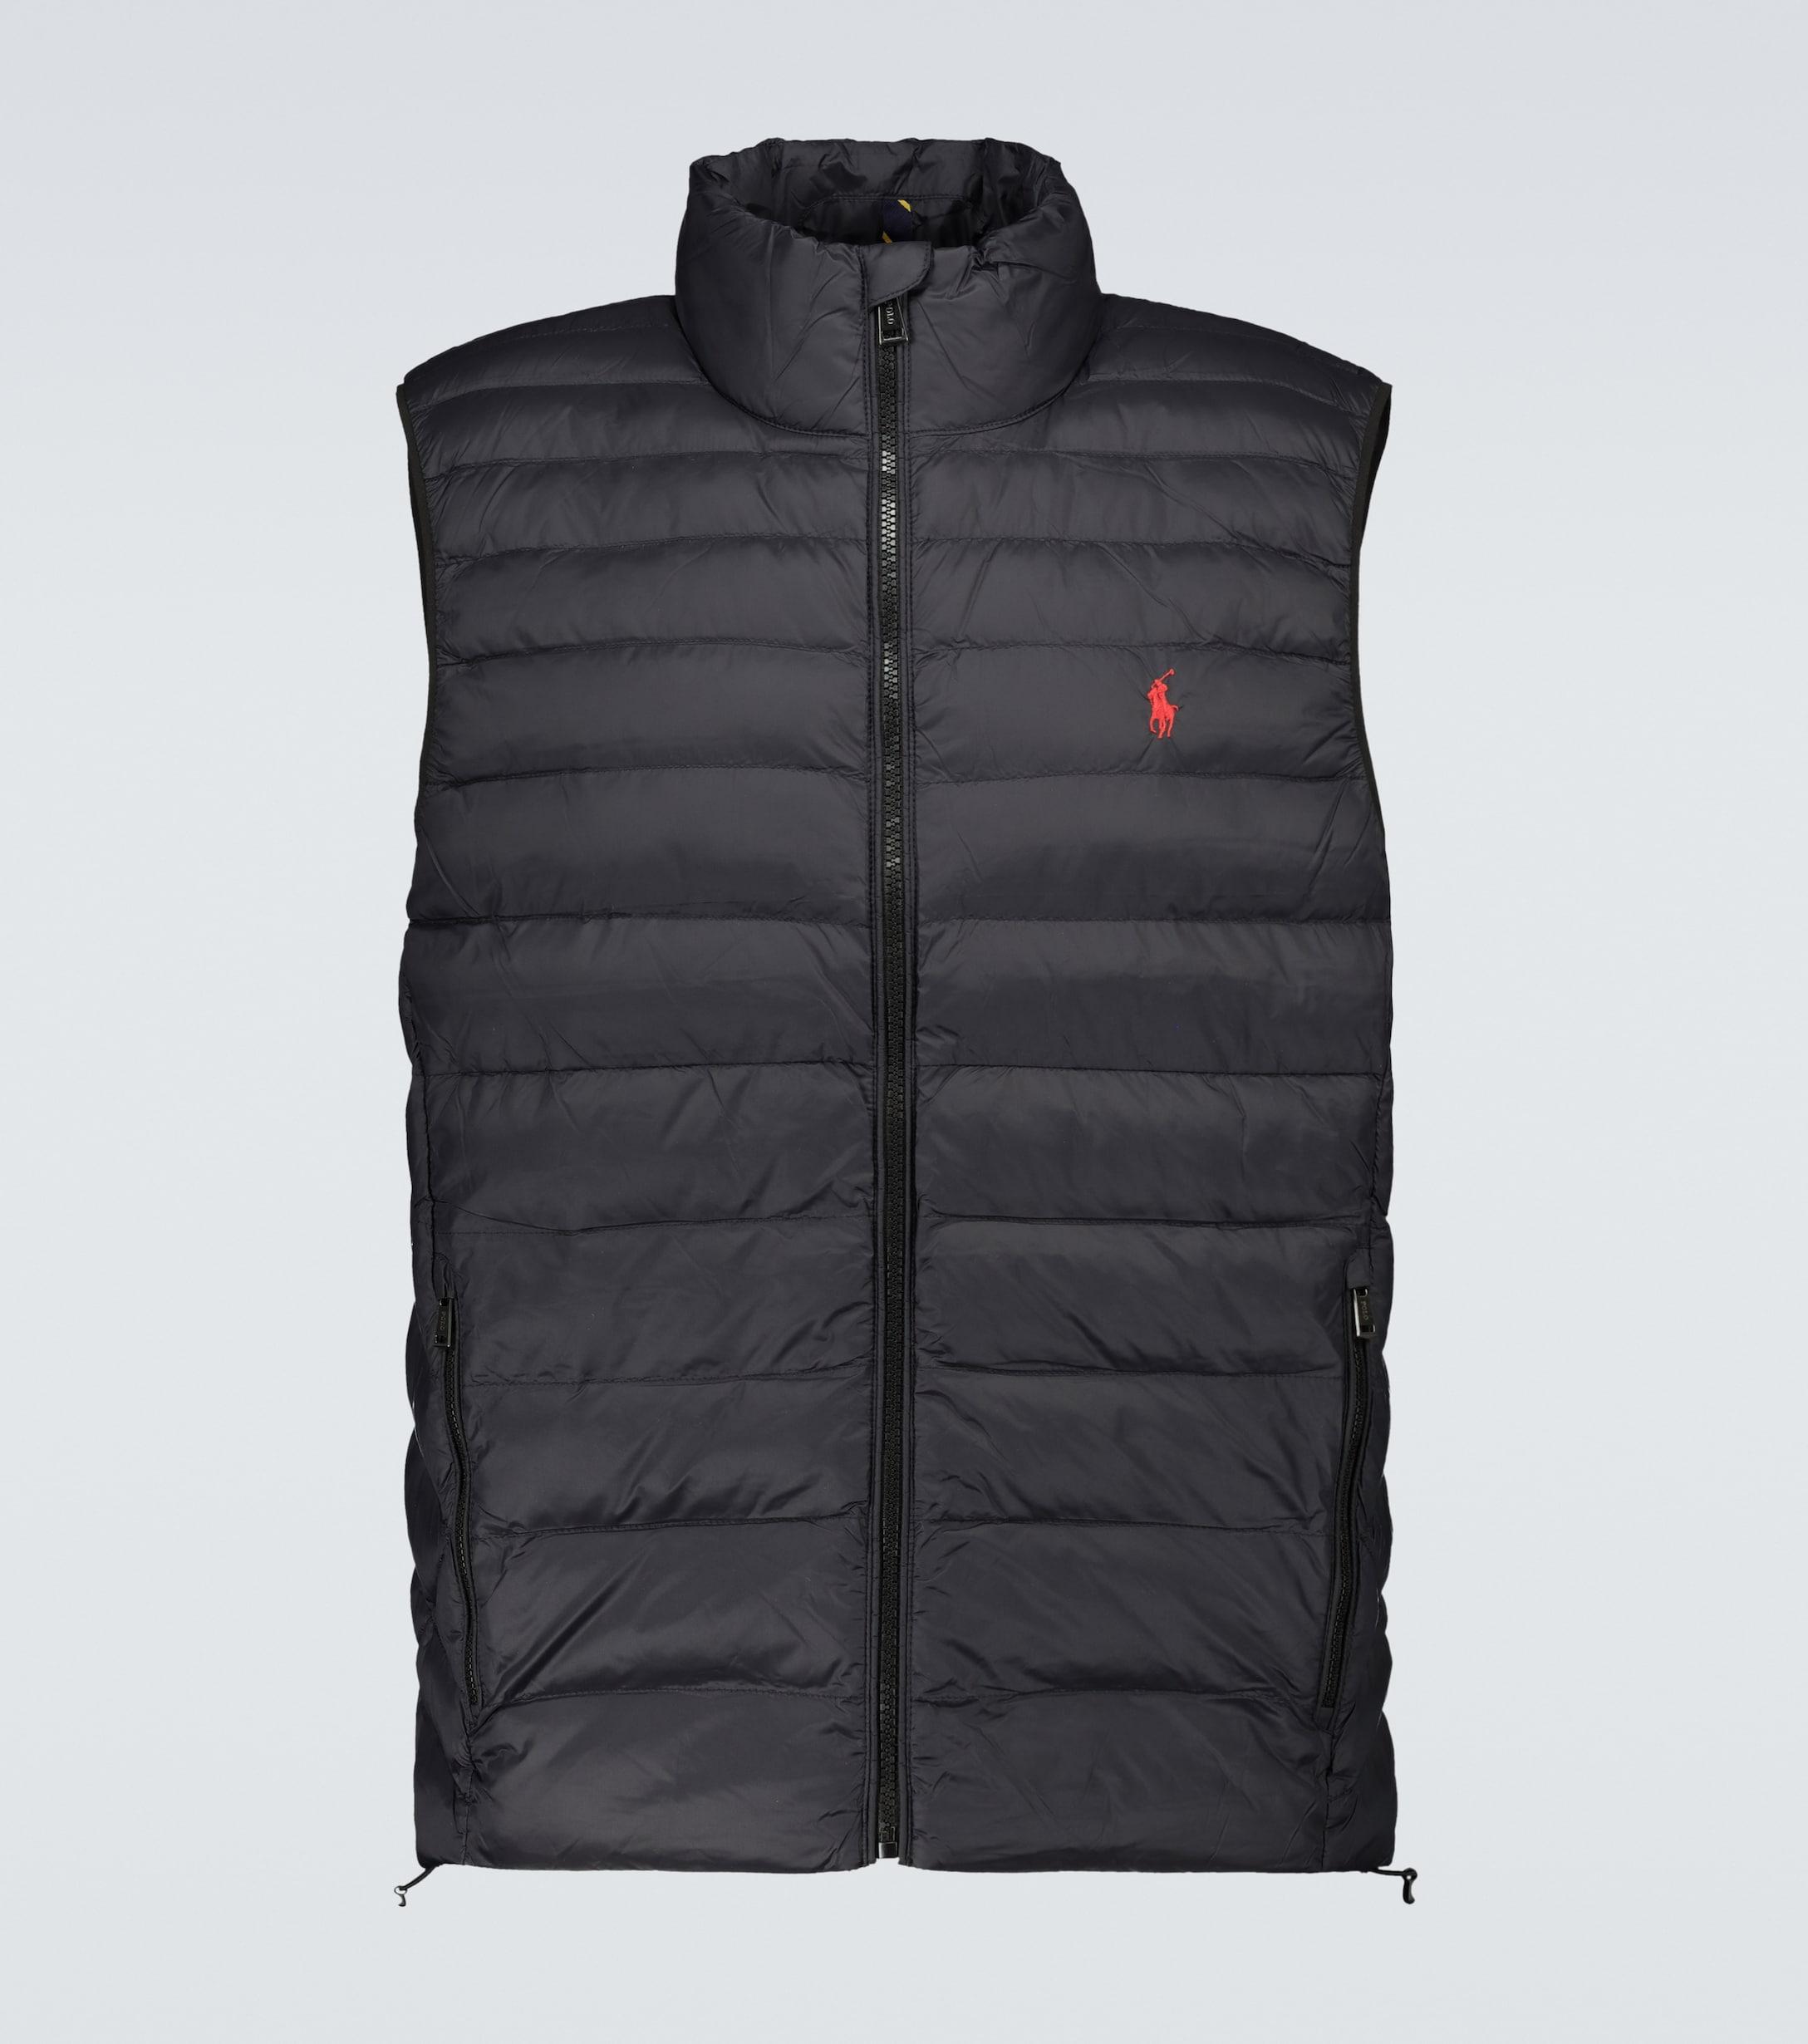 Polo Ralph Lauren Synthetic Terra Nylon Vest in Black for Men - Lyst